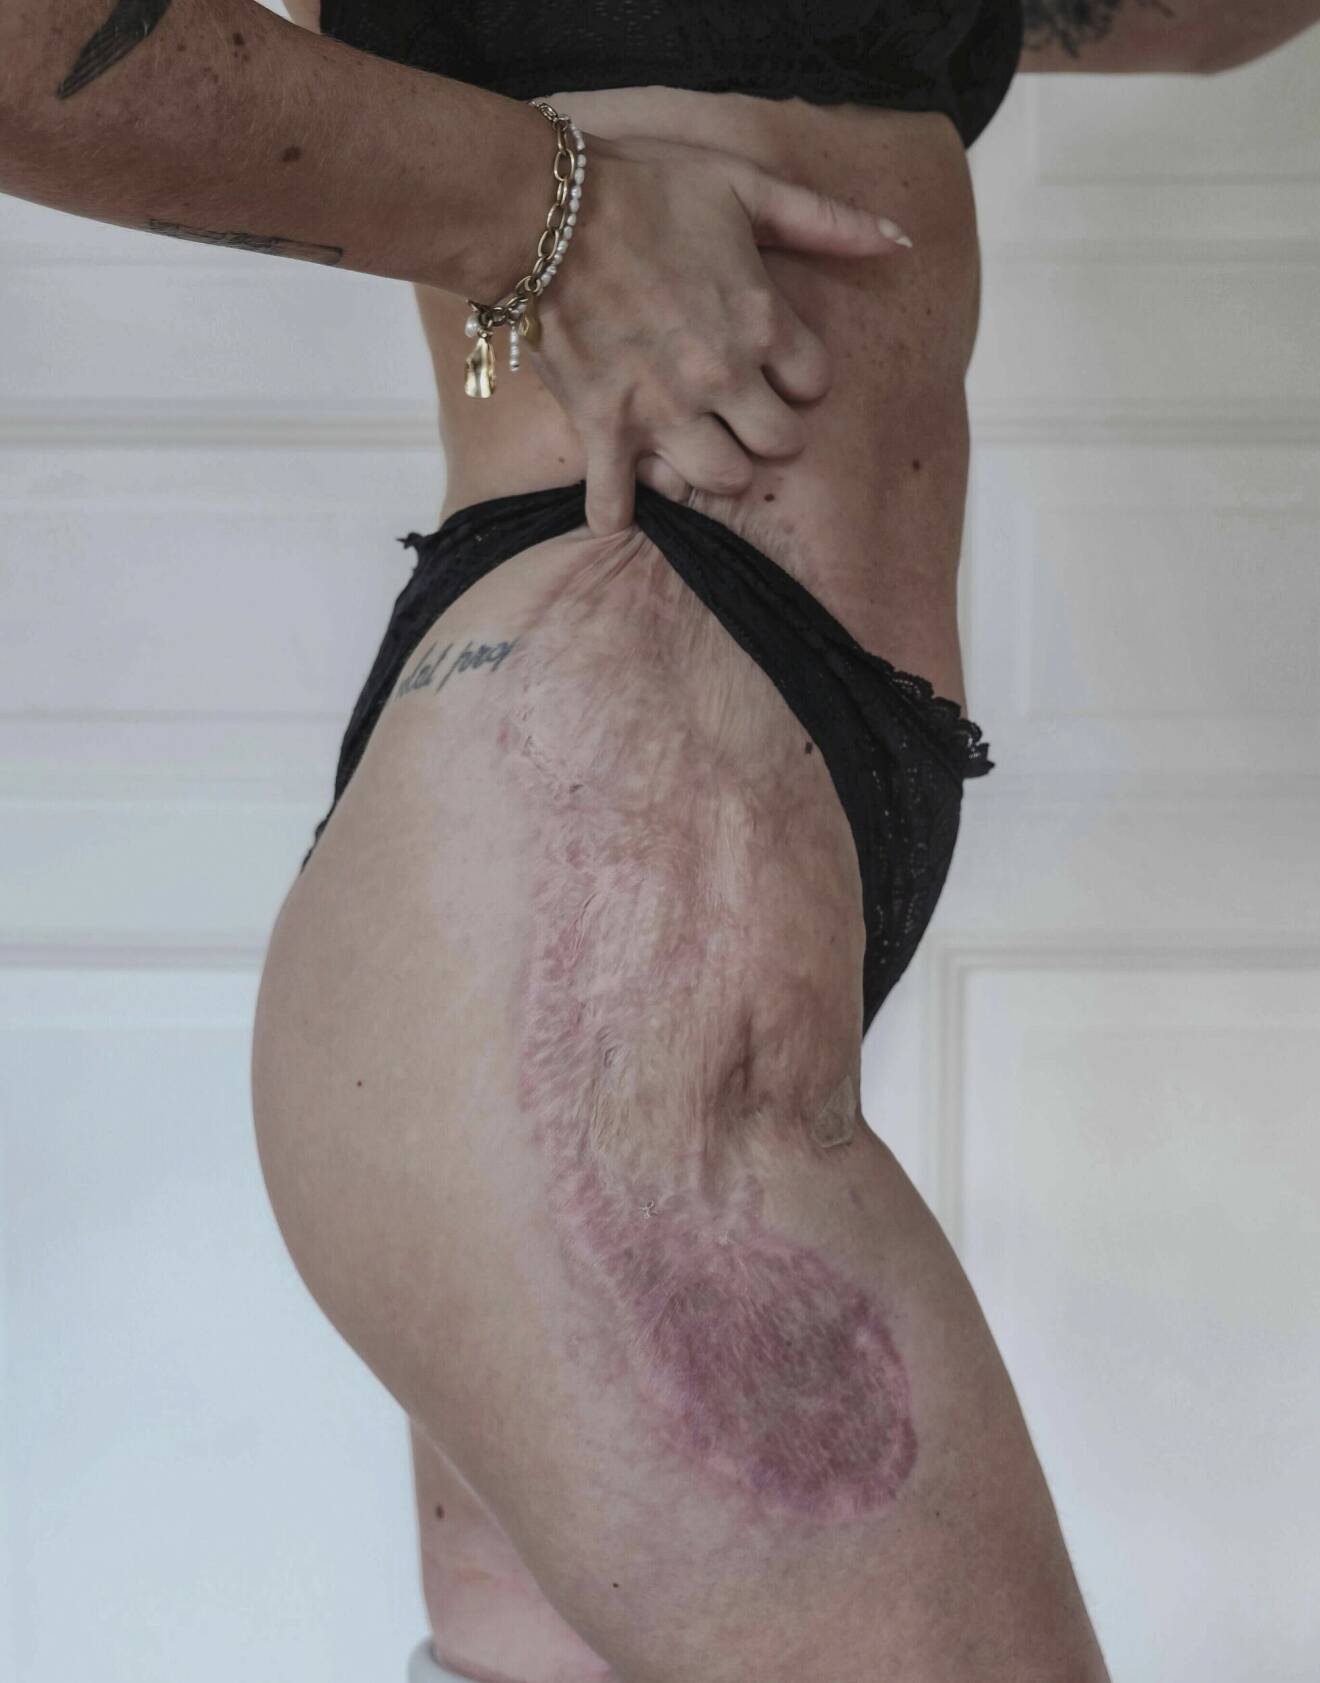 Elin Rantatalo tvingades transplantera hud från låret för att "täcka över" de delar av kroppen som drabbats hårt av vävnadsdöden efter sepsis.